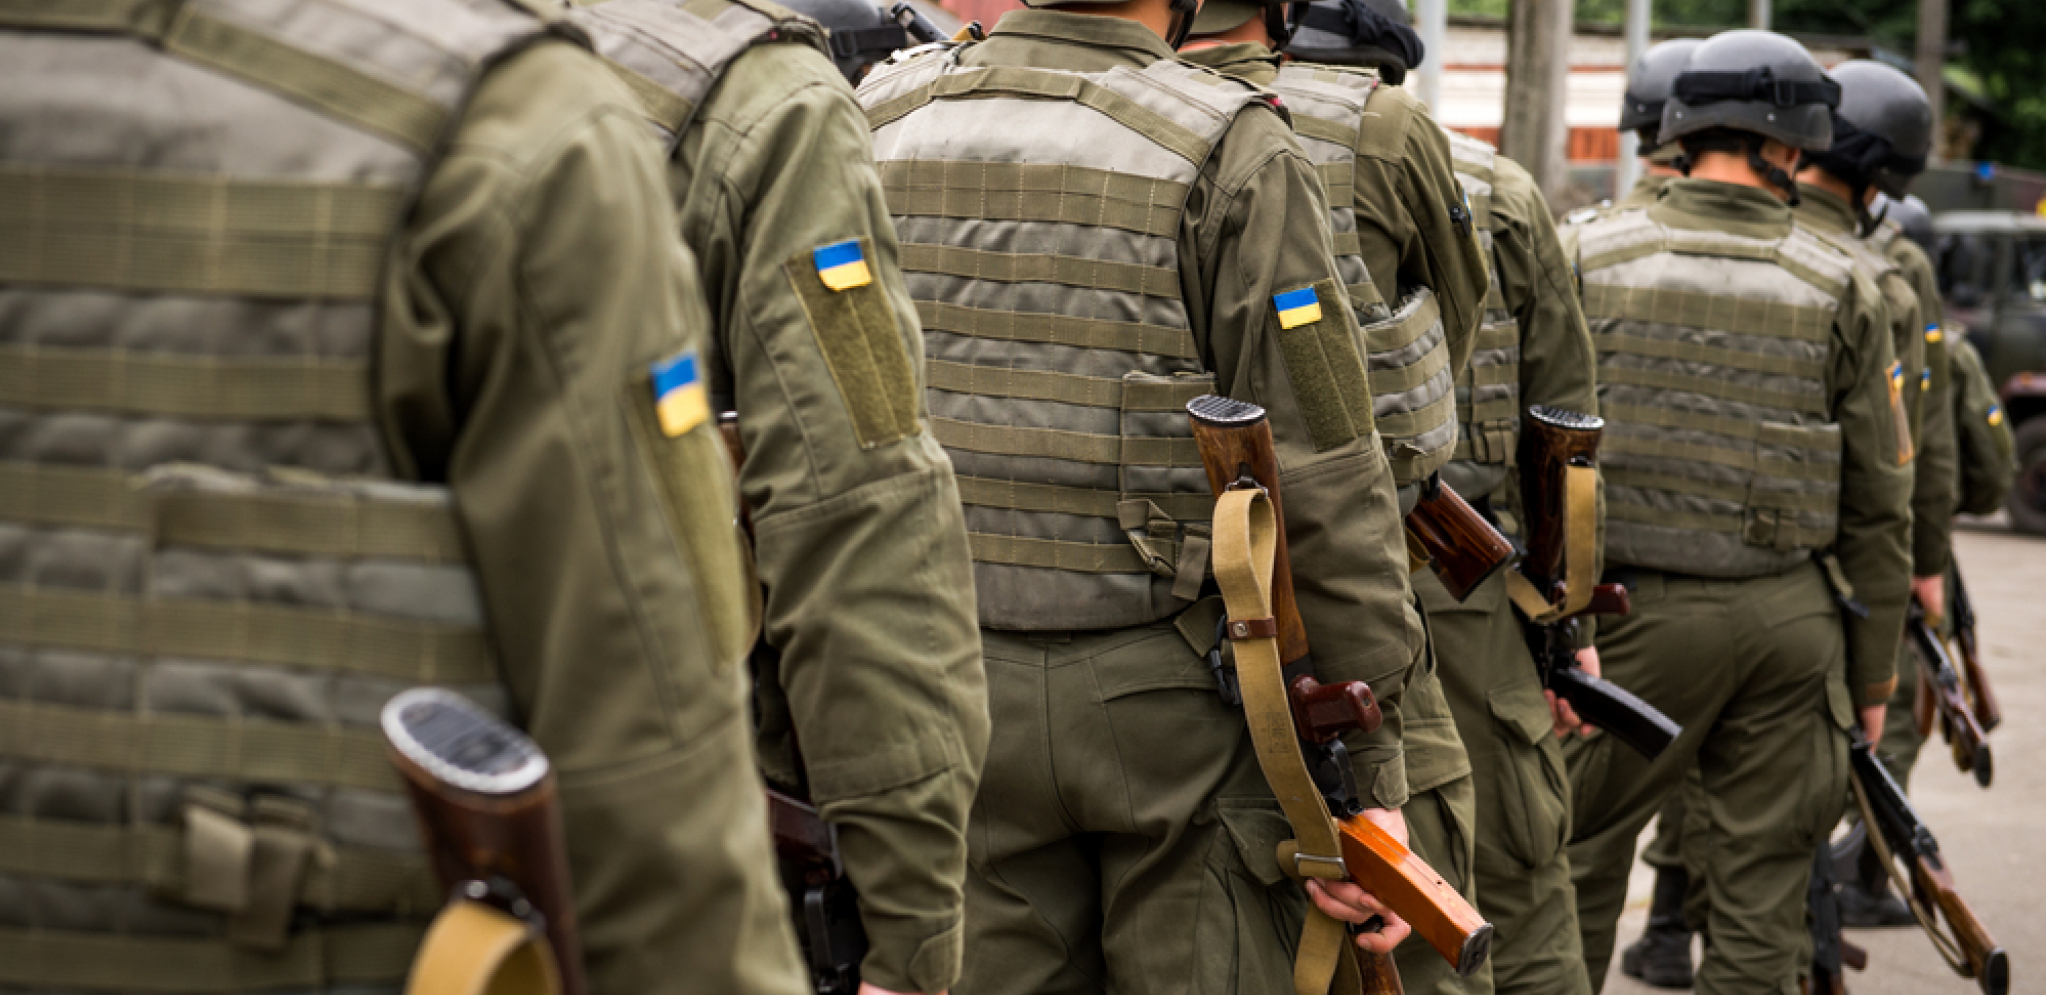 FRKA U BAJDENOVOJ ADMINISTRACIJI Amerika ne može da dozvoli da Ukrajina ostane bez novca pre nego što ponestane municije